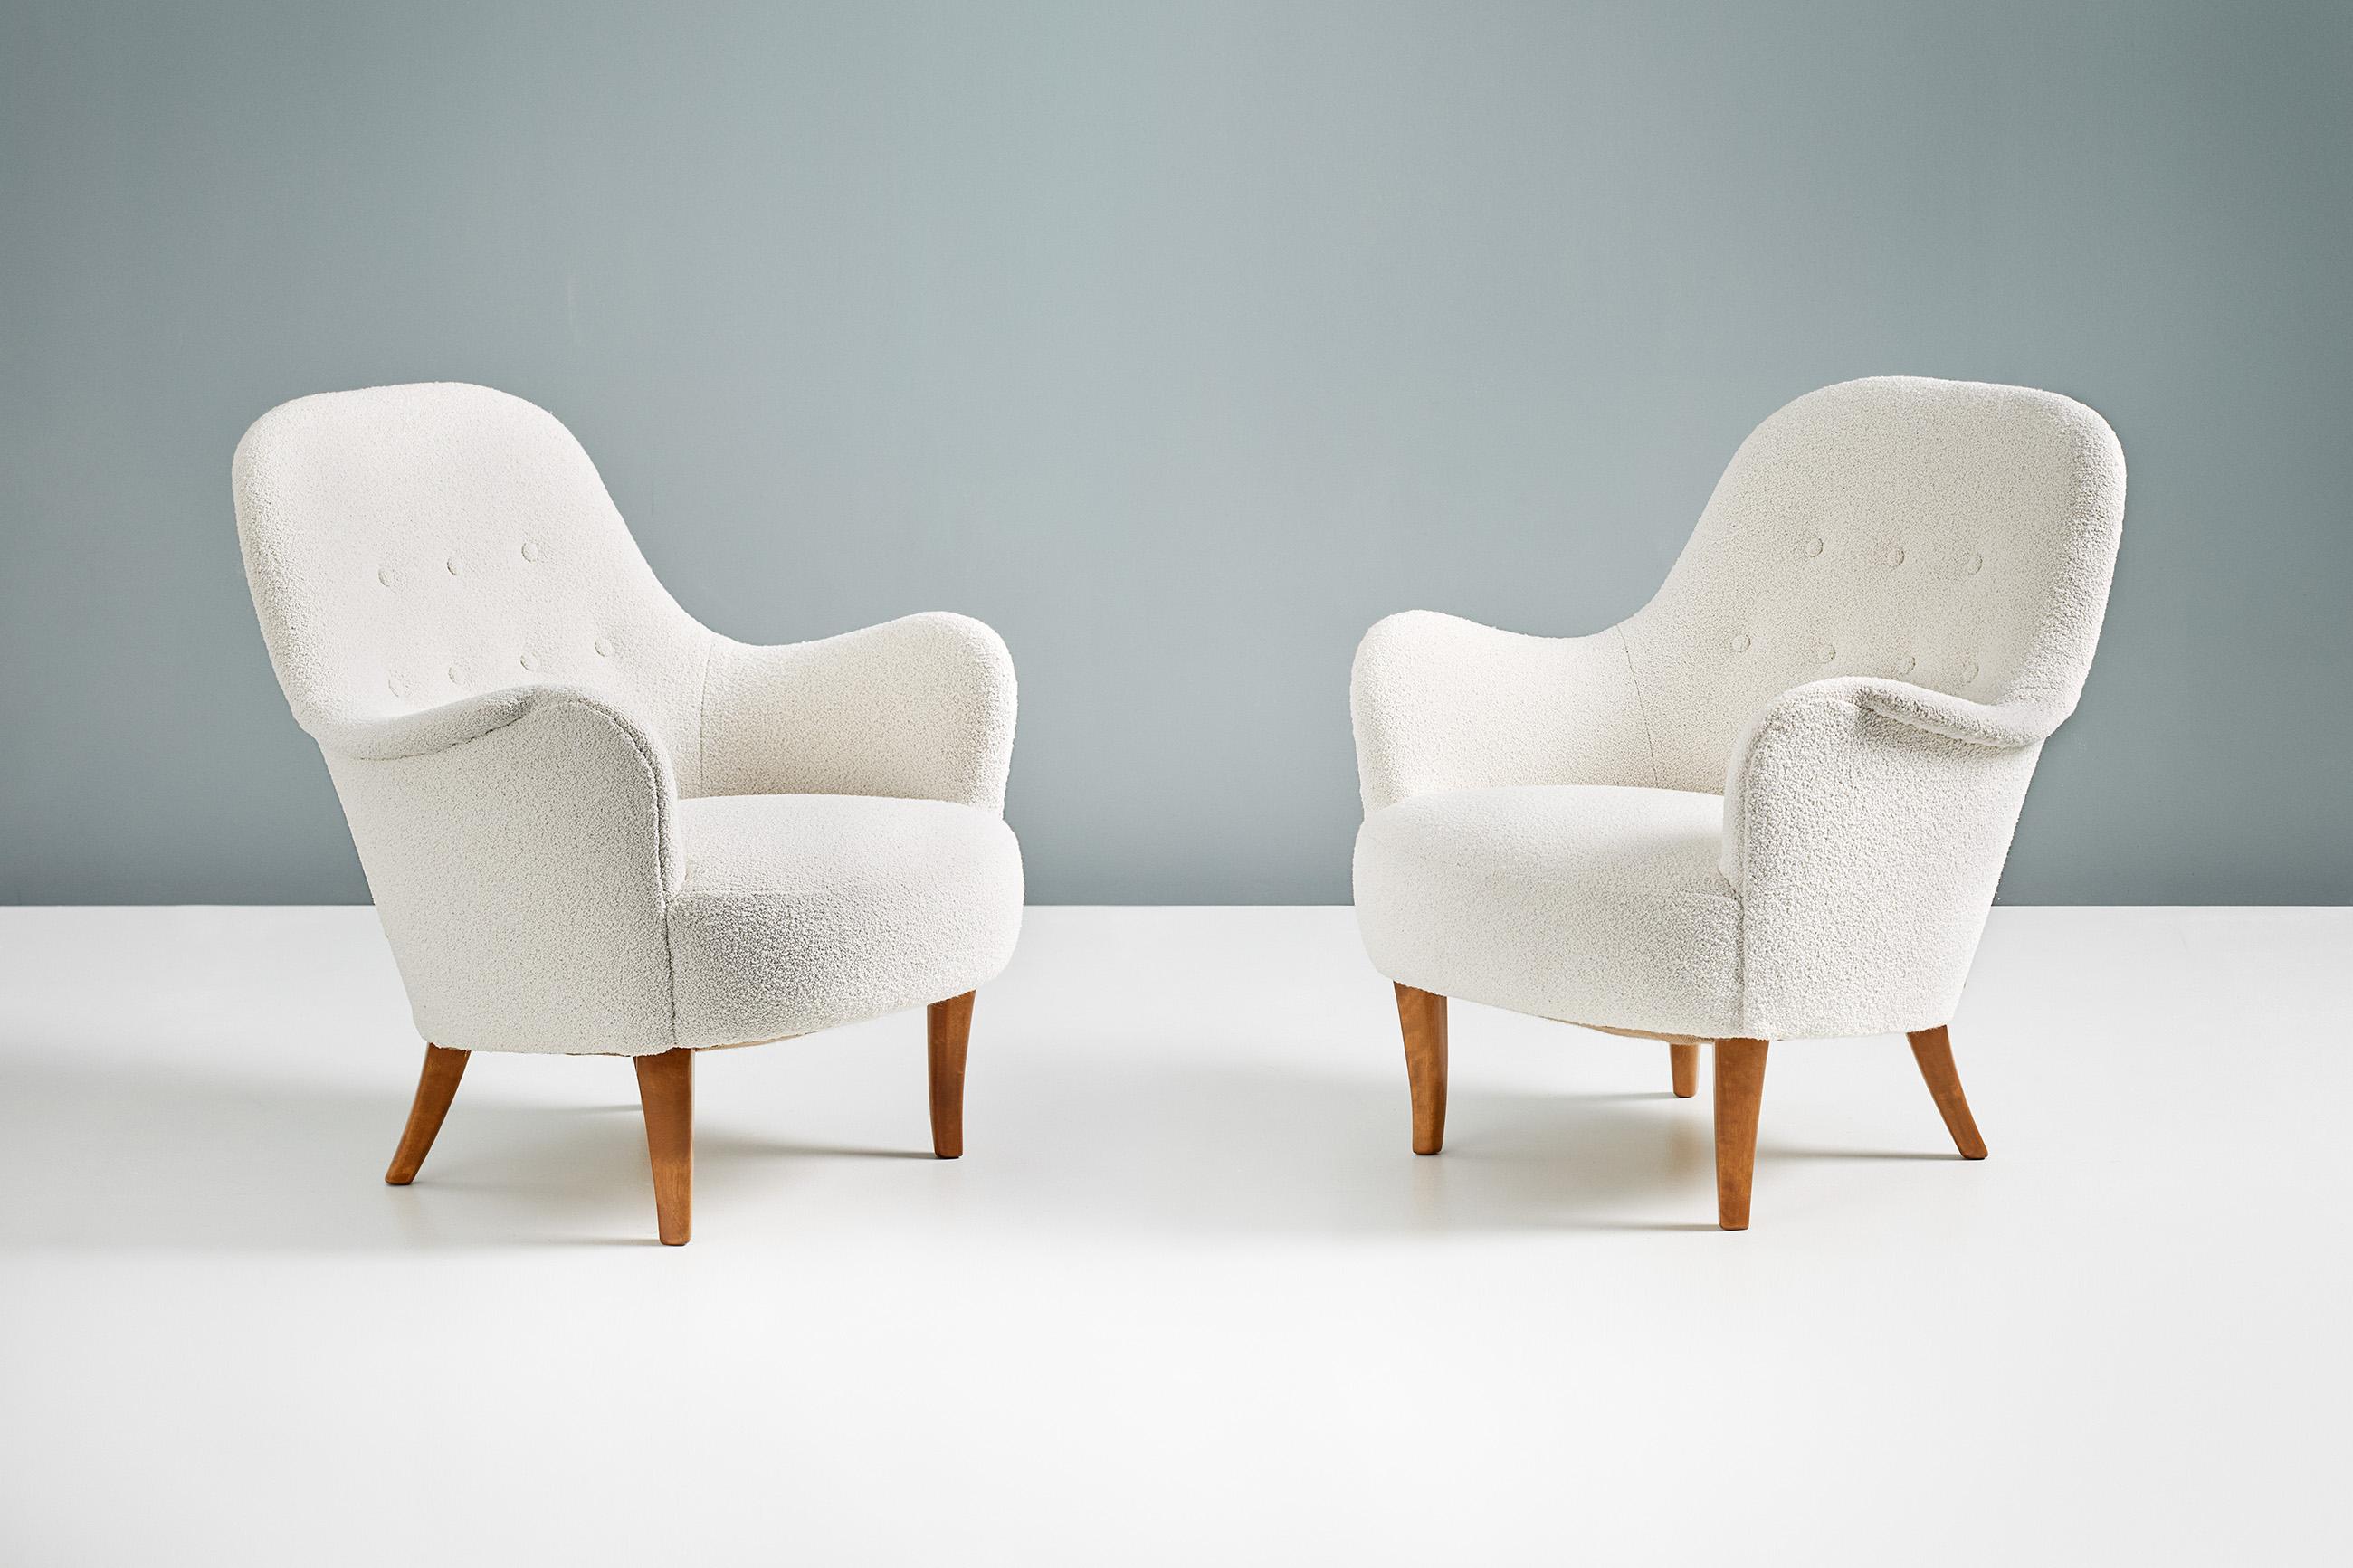 Chaises longues Carl Malmsten 'Cirkus', 1950s

Paire de fauteuils conçus par Carl Malmsten dans les années 1950 et produits en Suède. Cette paire a été retapissée en chase Erwin 'Embrace Cotton White', un luxueux tissu de mélange laine-coton blanc